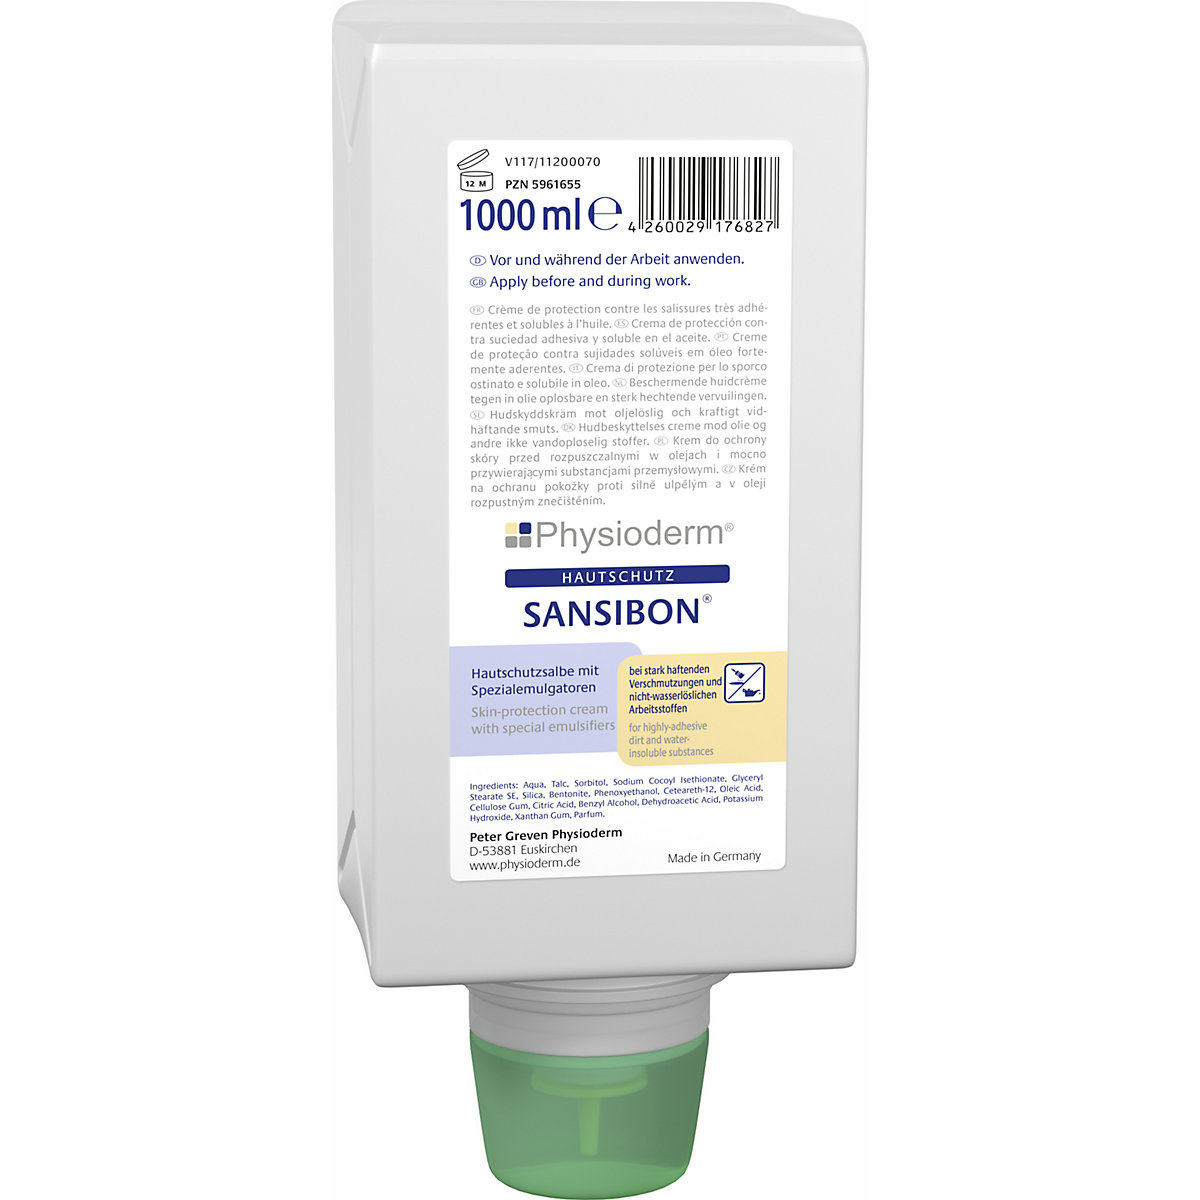 SANSIBON® hand cleaner/barrier cream